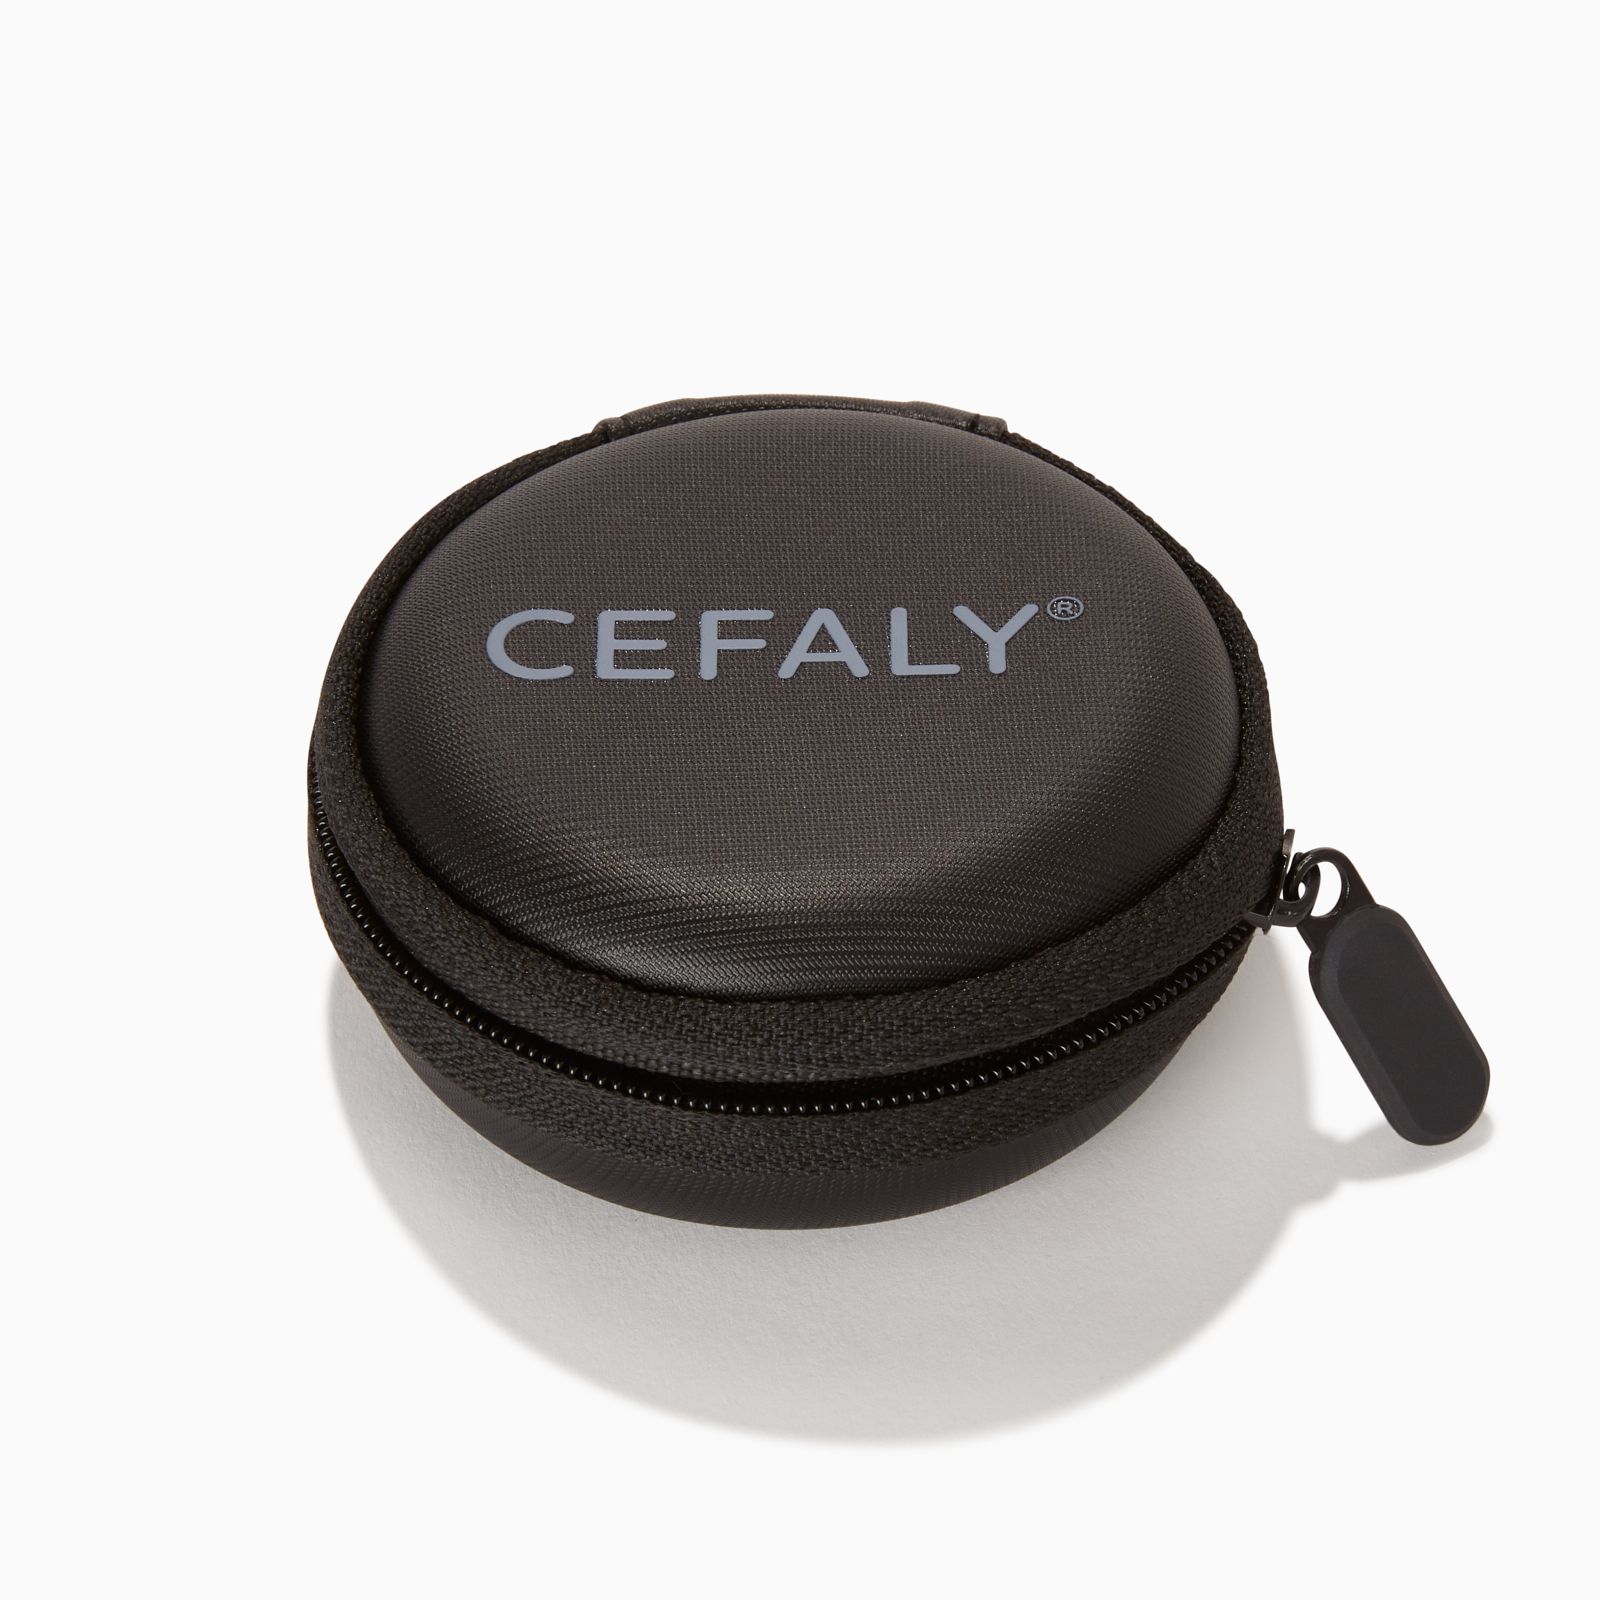 Foto del dispositivo CEFALY para el tratamiento y la prevención de migrañas sin electrodo 2